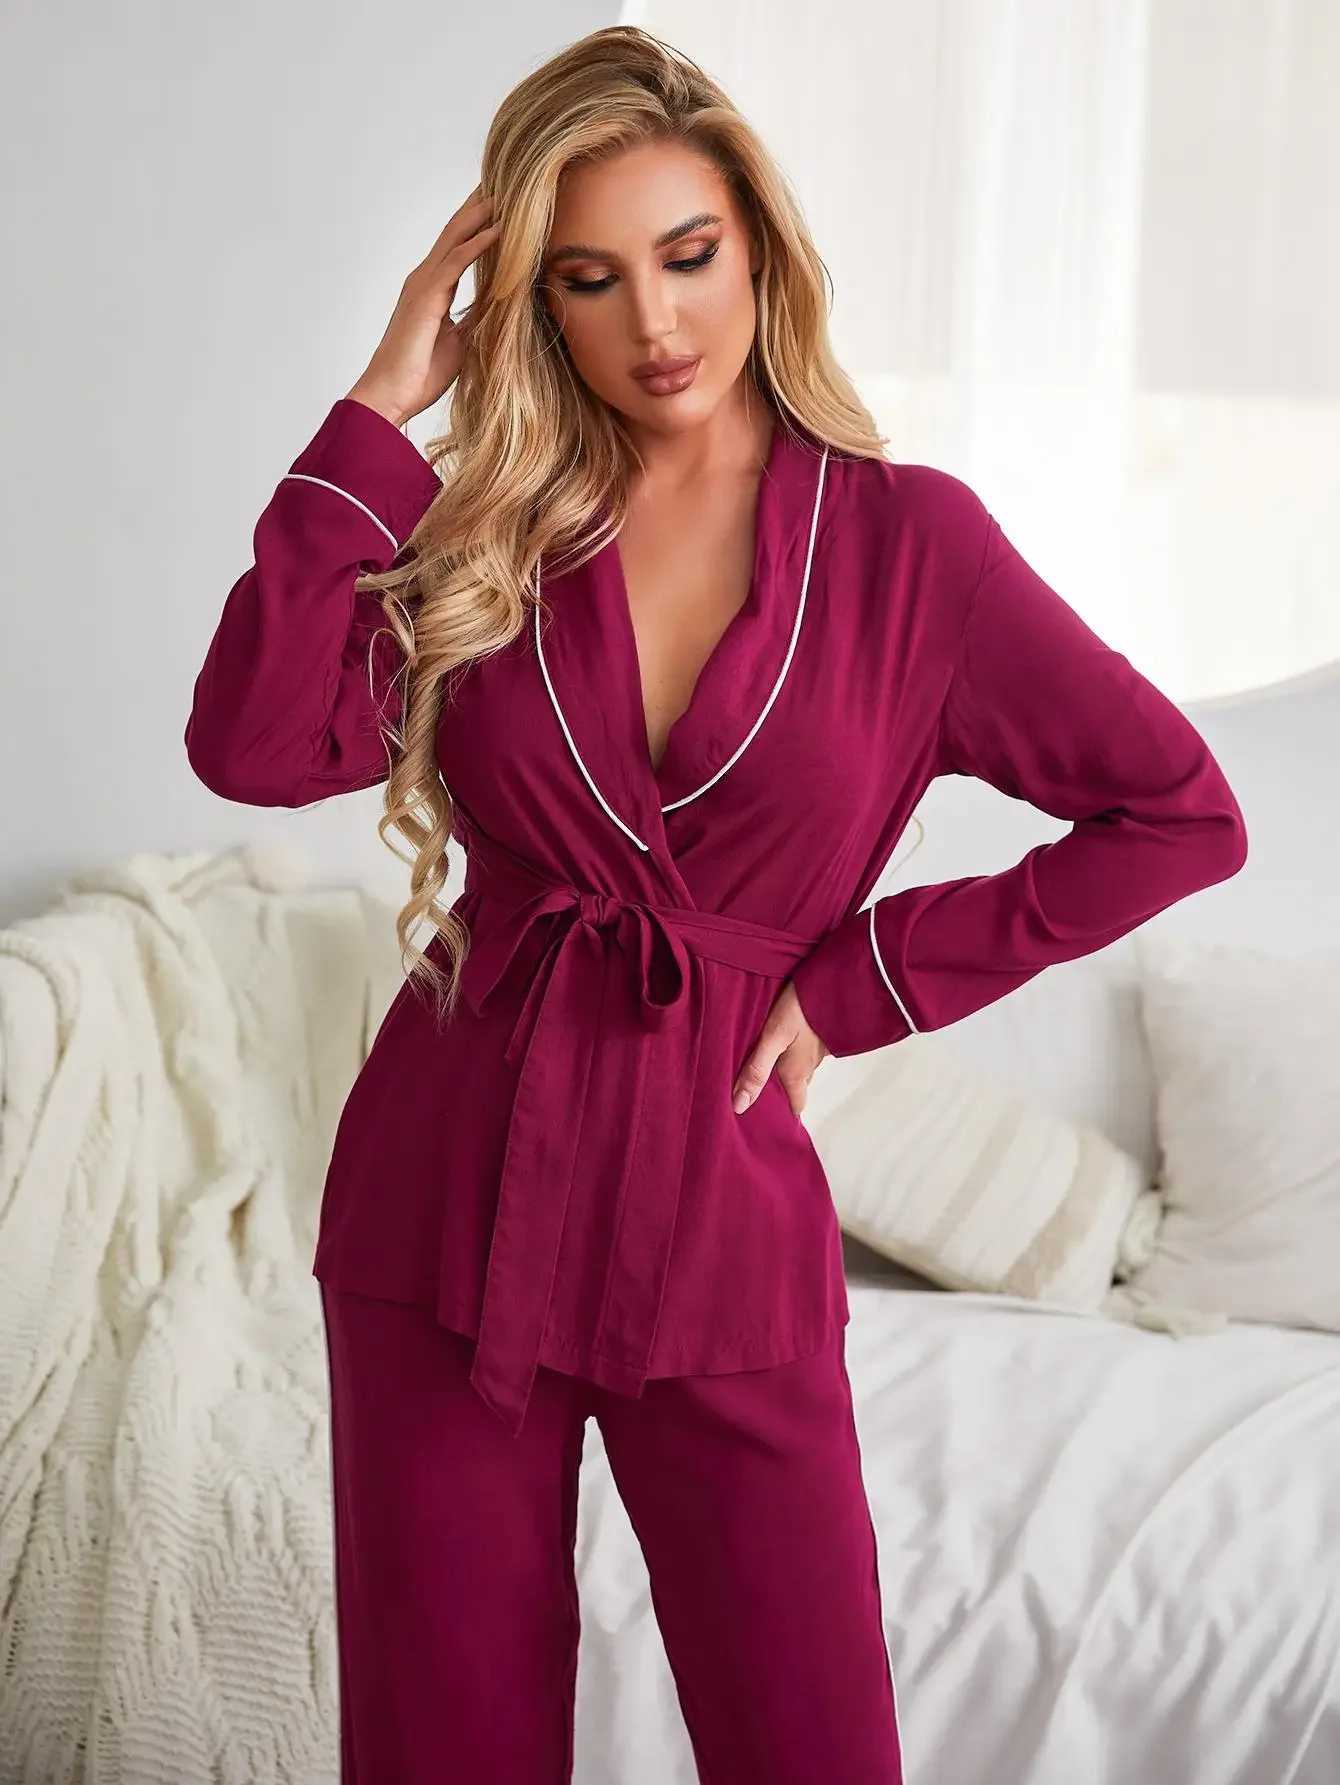 Women's Sleepwear Solid Women Pajama Set Wrap V Neck Long Slves Waist Belt Top Long Pants Slpwear Female Nightwear Homwear Cloth Y240426